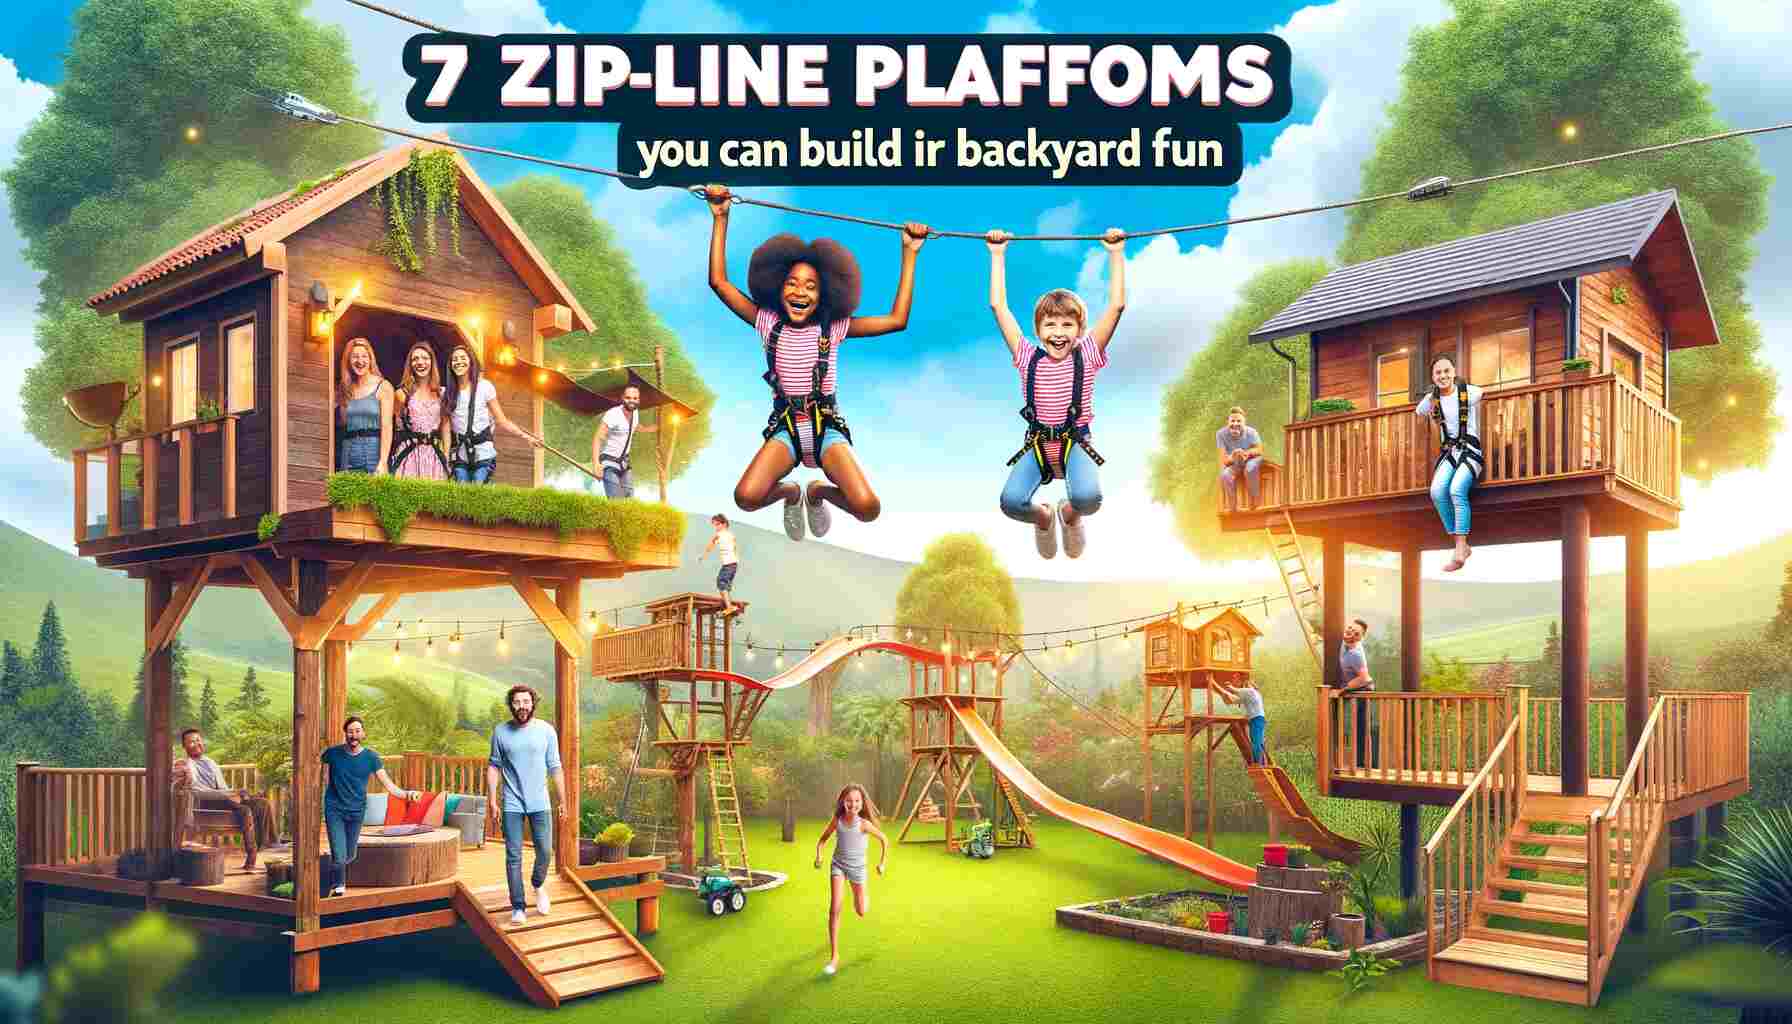 7 Zipline Platforms You Can Build for Backyard Fun